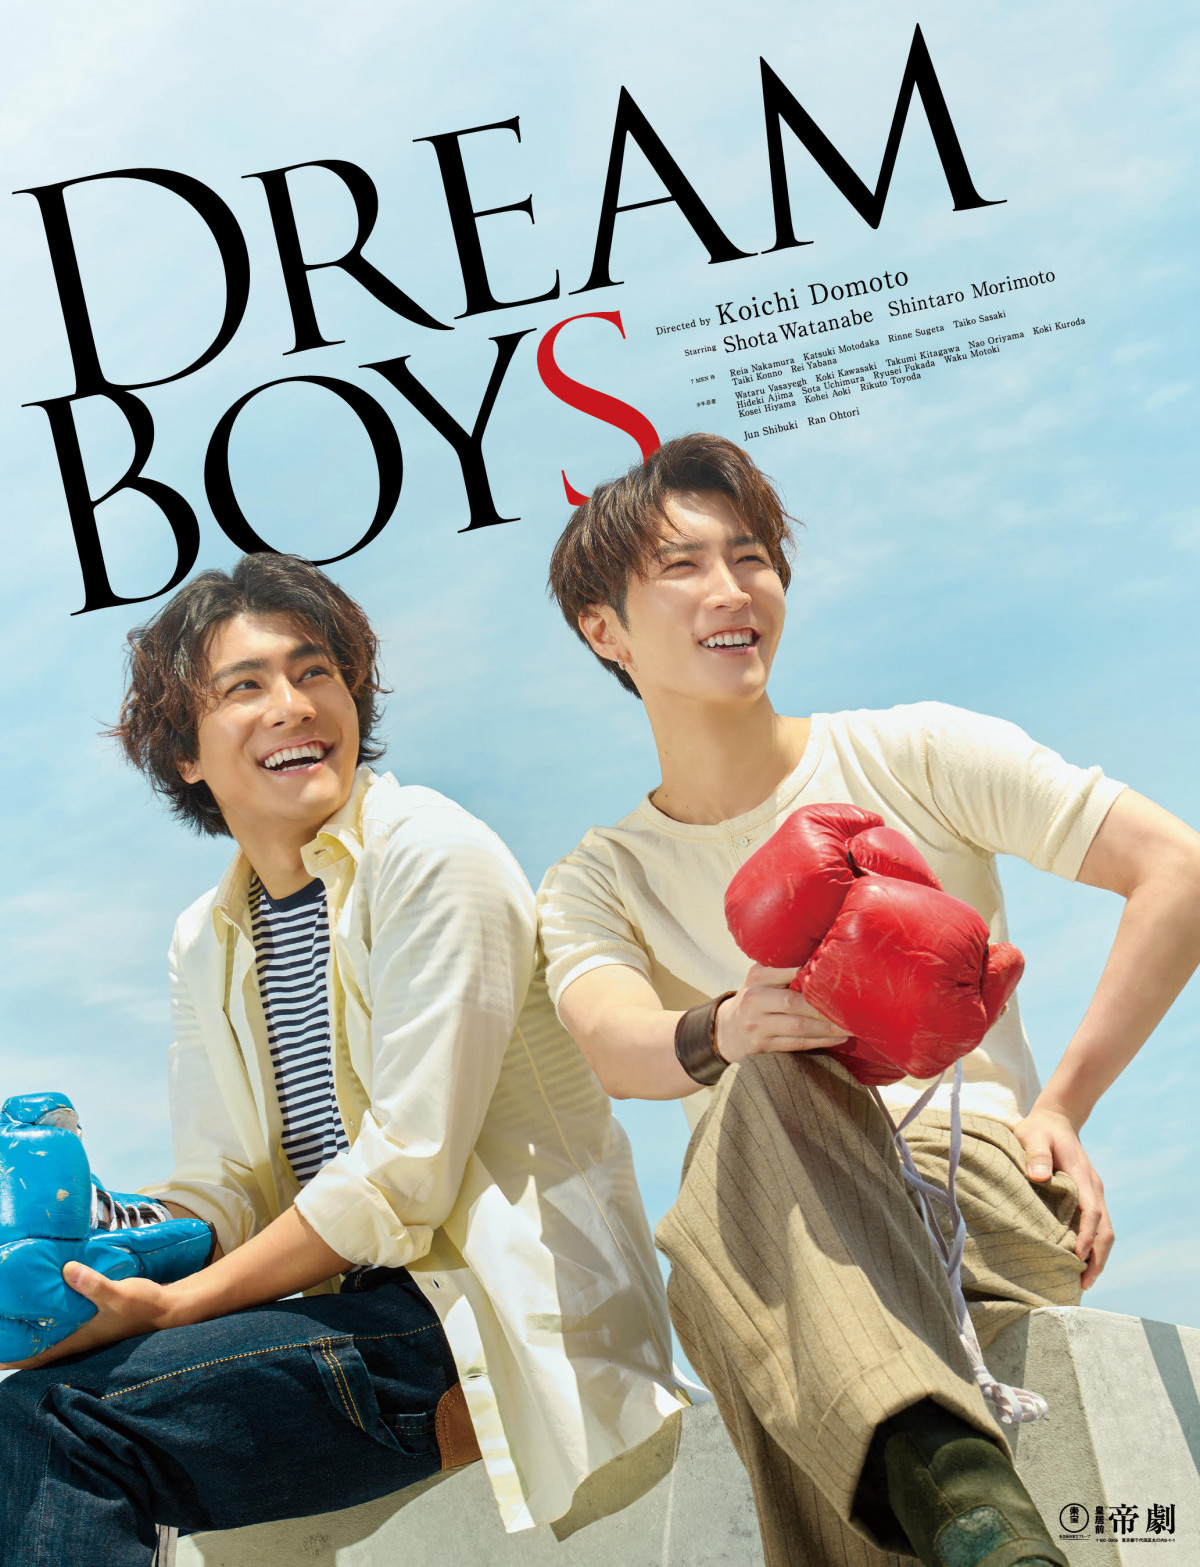 渡辺翔太×森本慎太郎『DREAM BOYS』4・17ディスク化 ビジュアルコメンタリー＆メイキング映像も収録 | ORICON NEWS